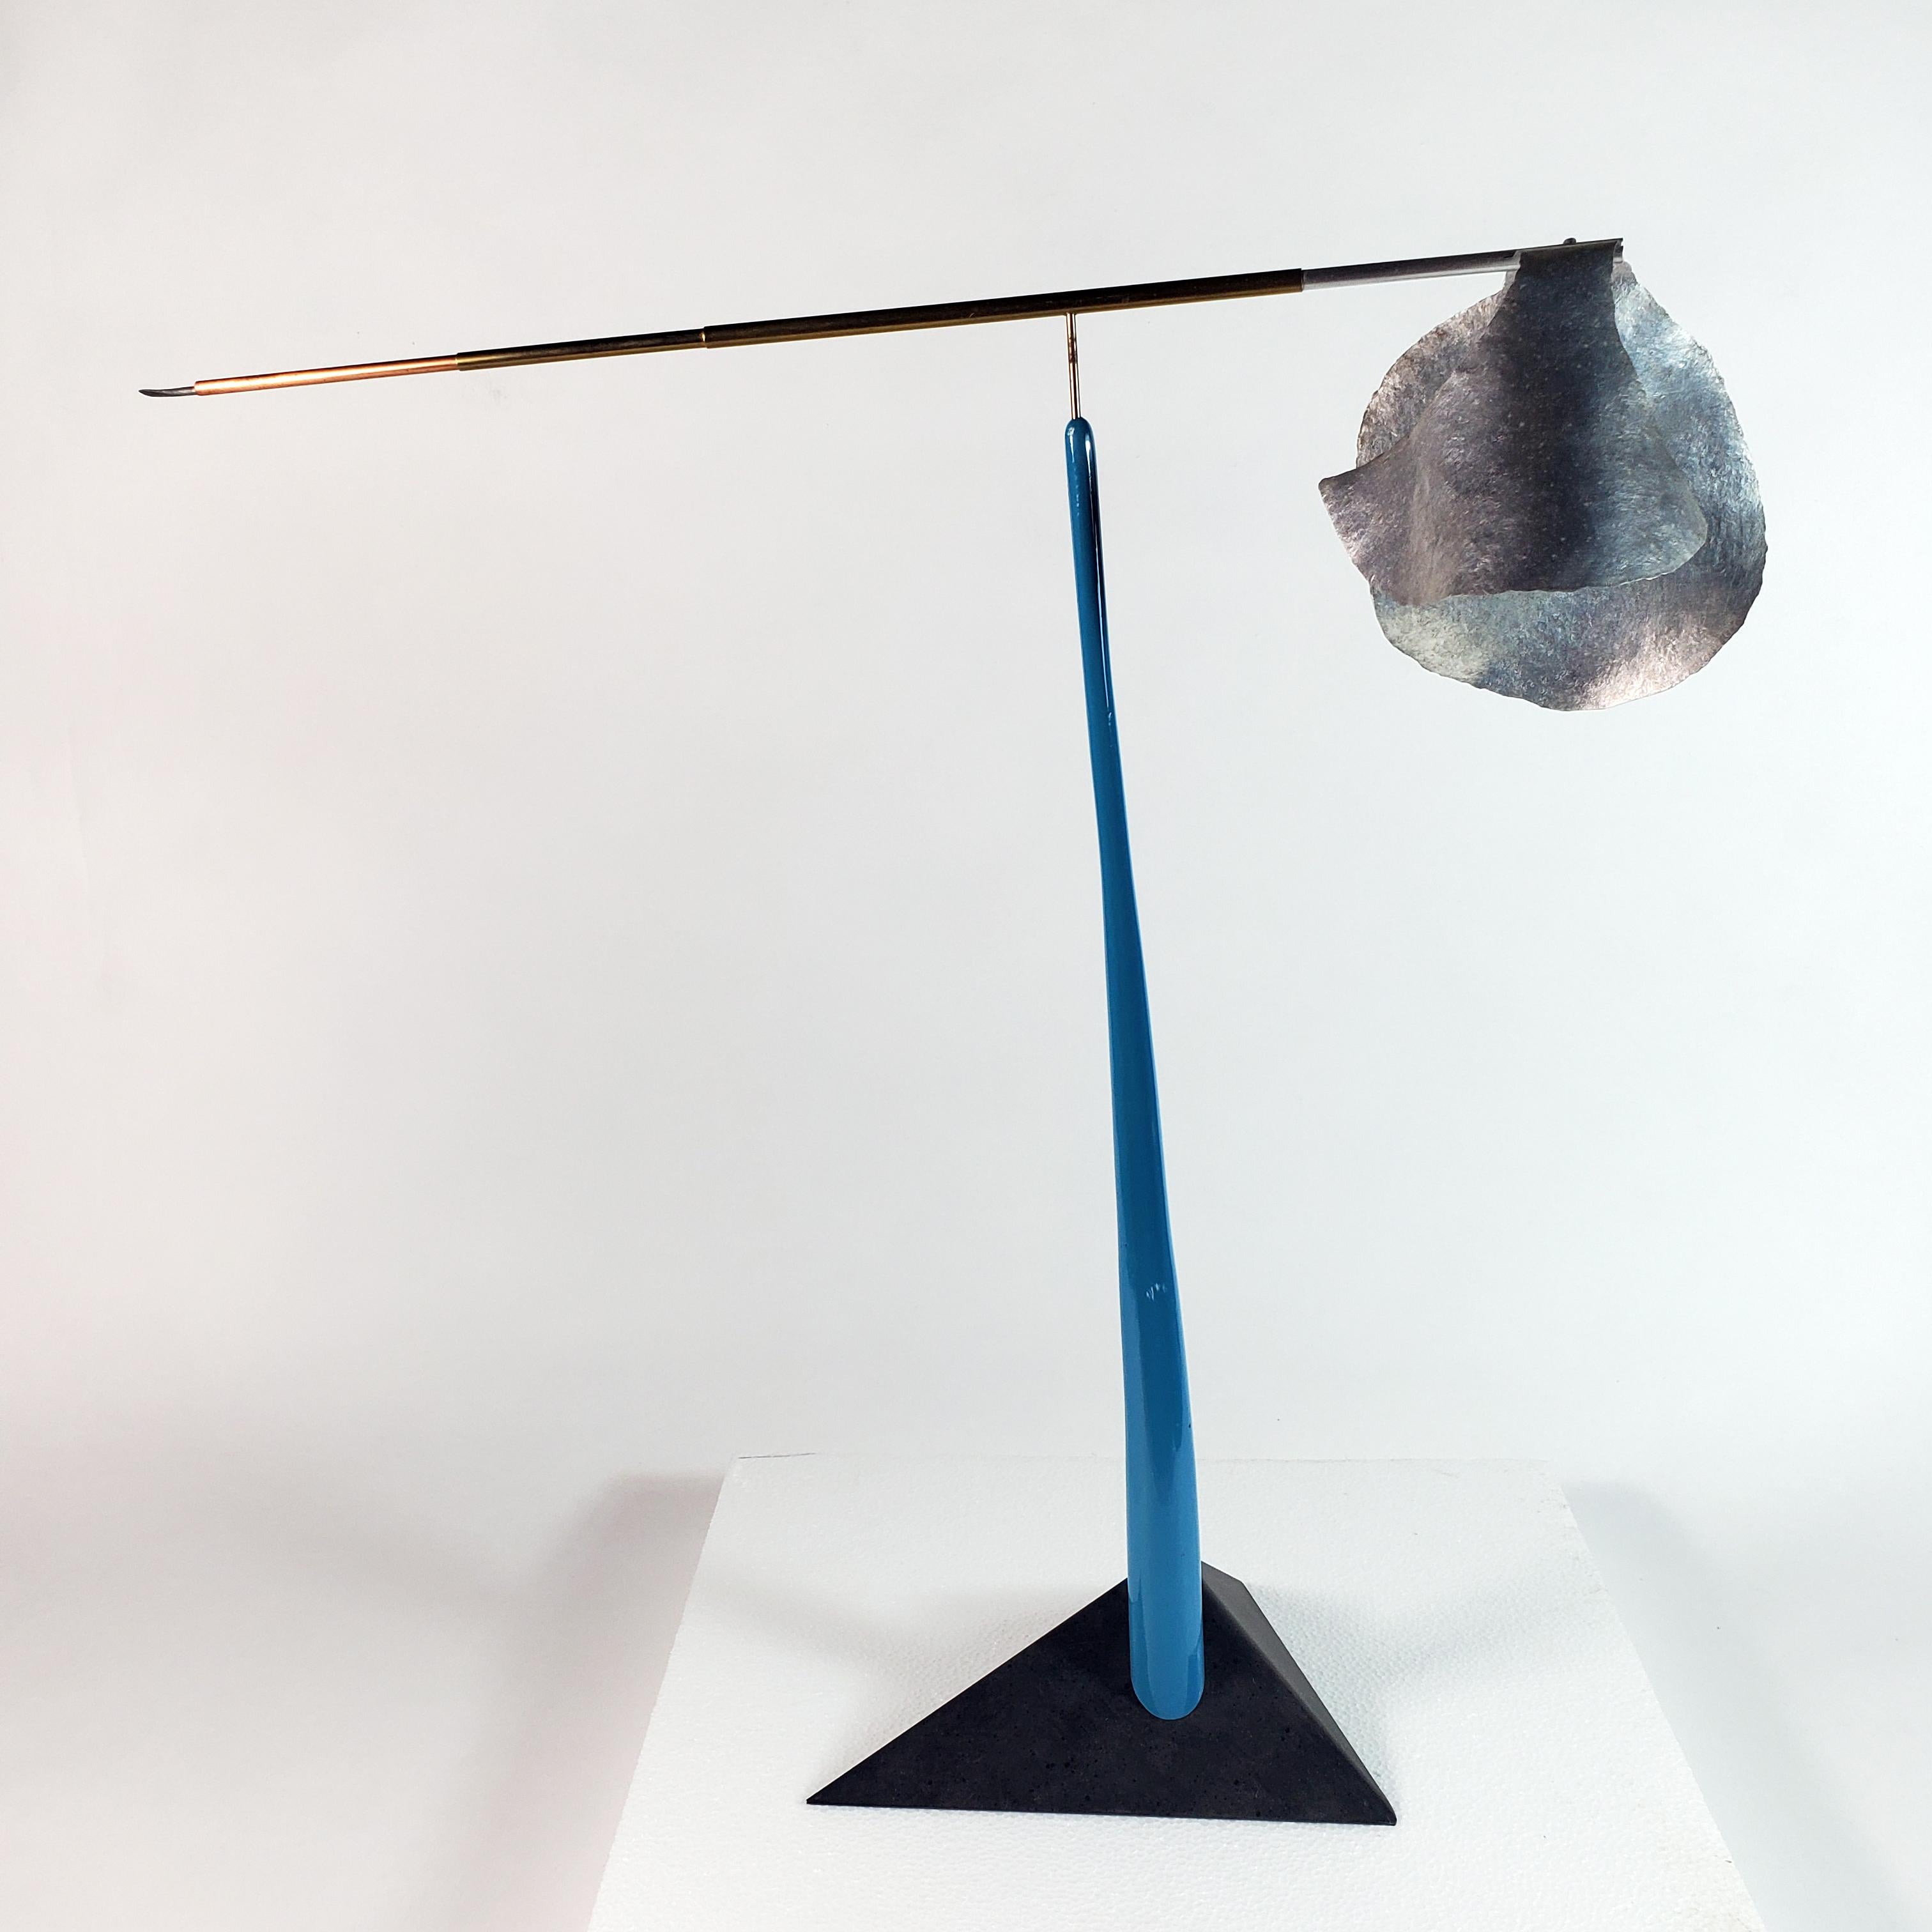 Mark Beltchenko Studio Abstract Sculpture - Cloud Construction #3